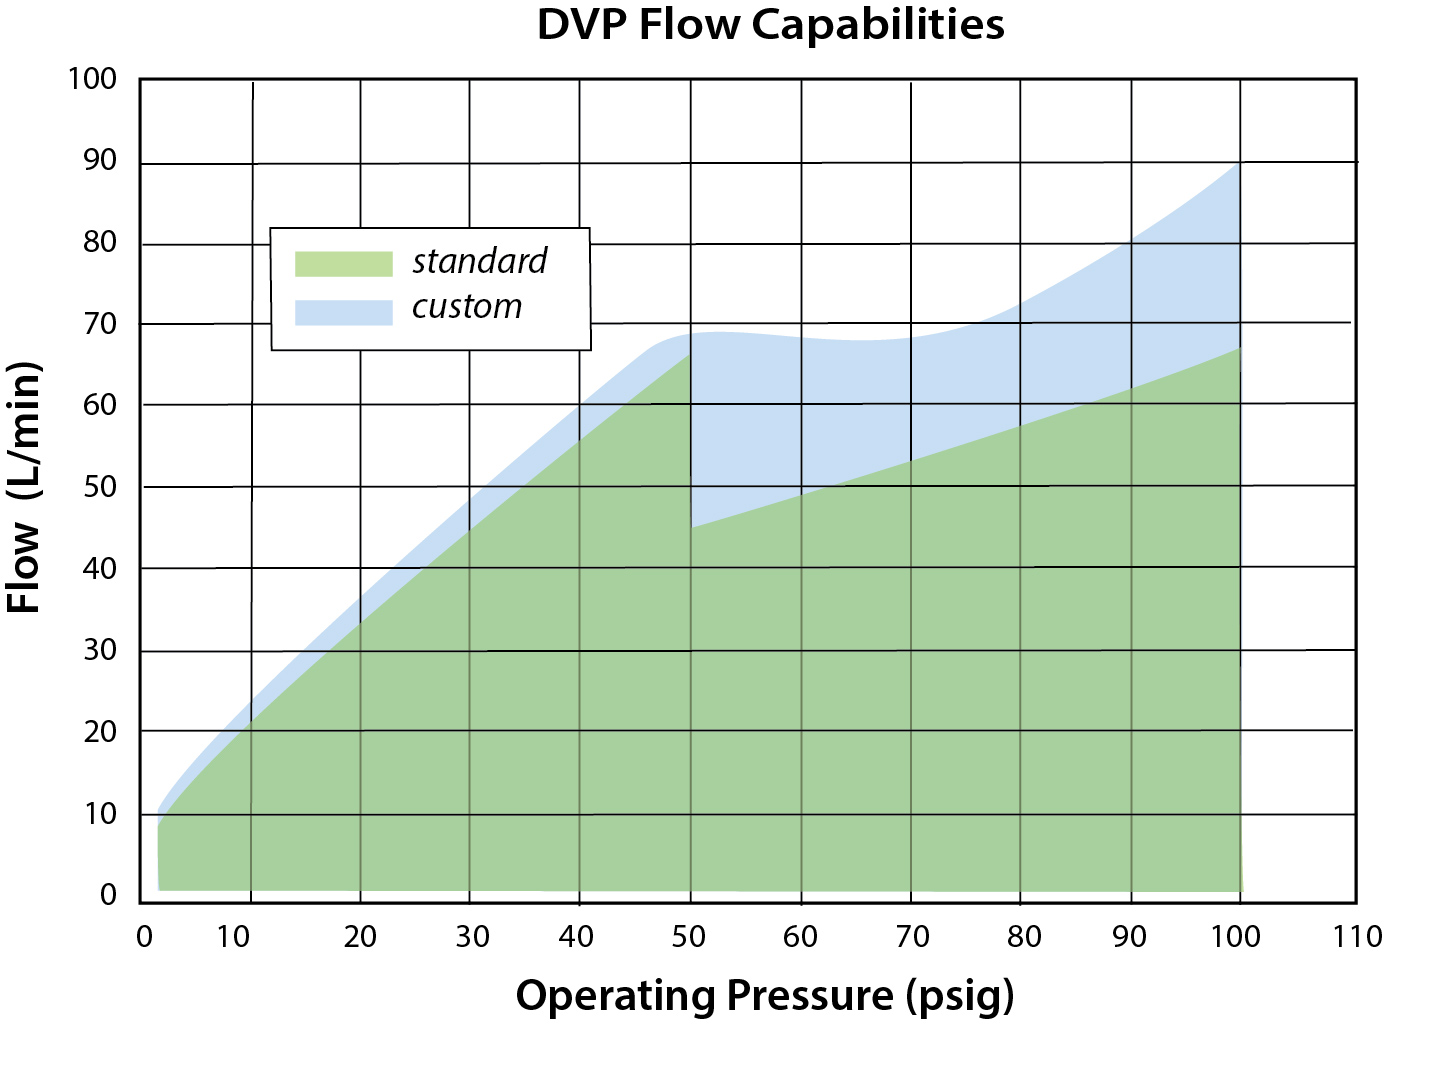 DVP Flow Capabilities Chart